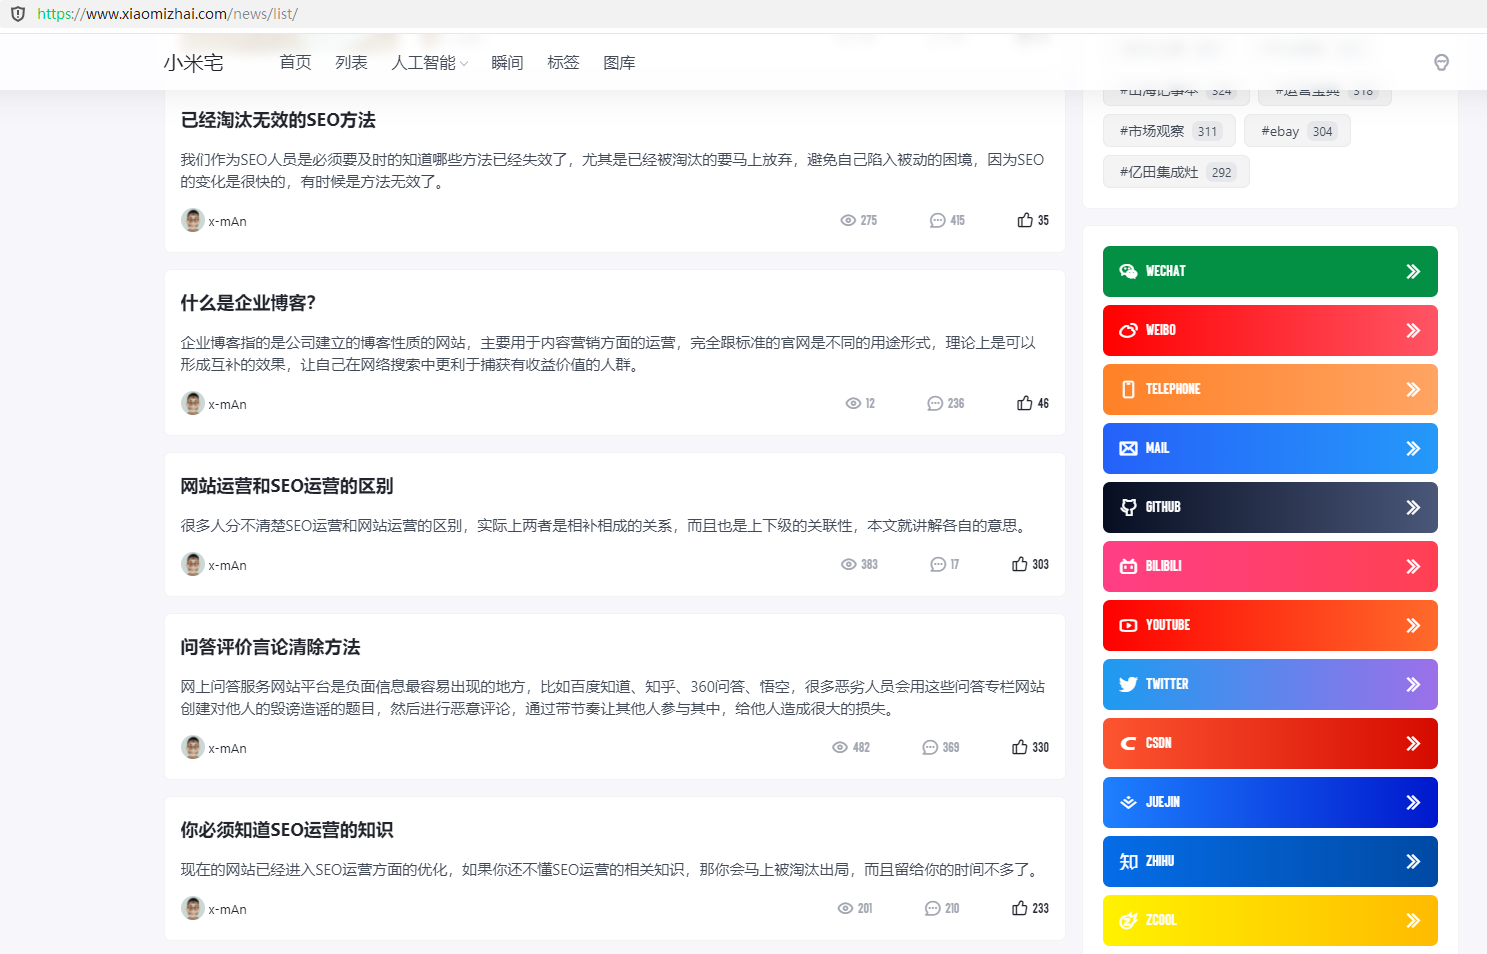 海南锦敏科技有限公司大量抄袭盗取侵权资源说明